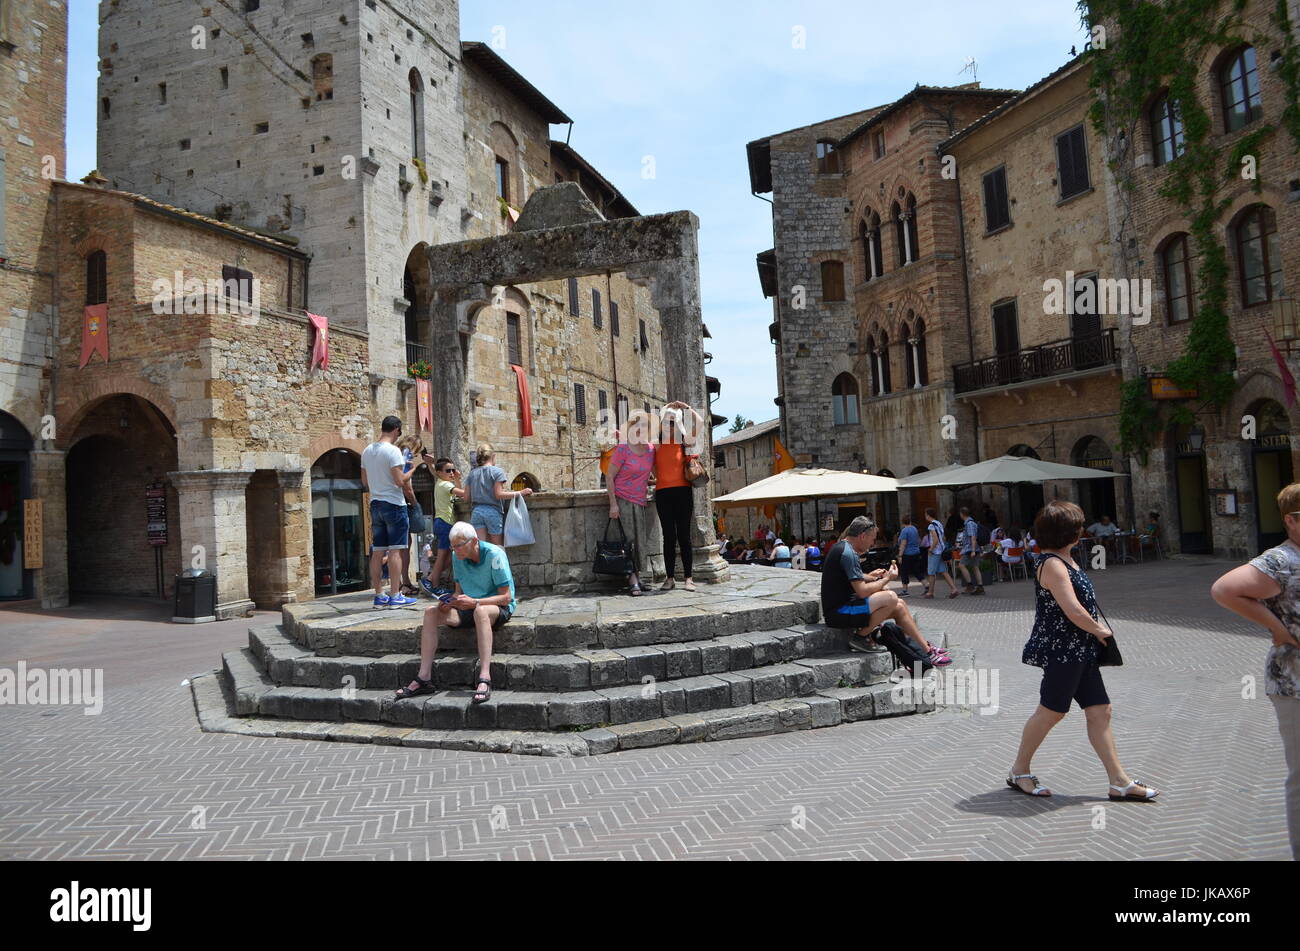 The Cisterna where people make a wish in San Gimignano,Tuscany, Italy. Stock Photo